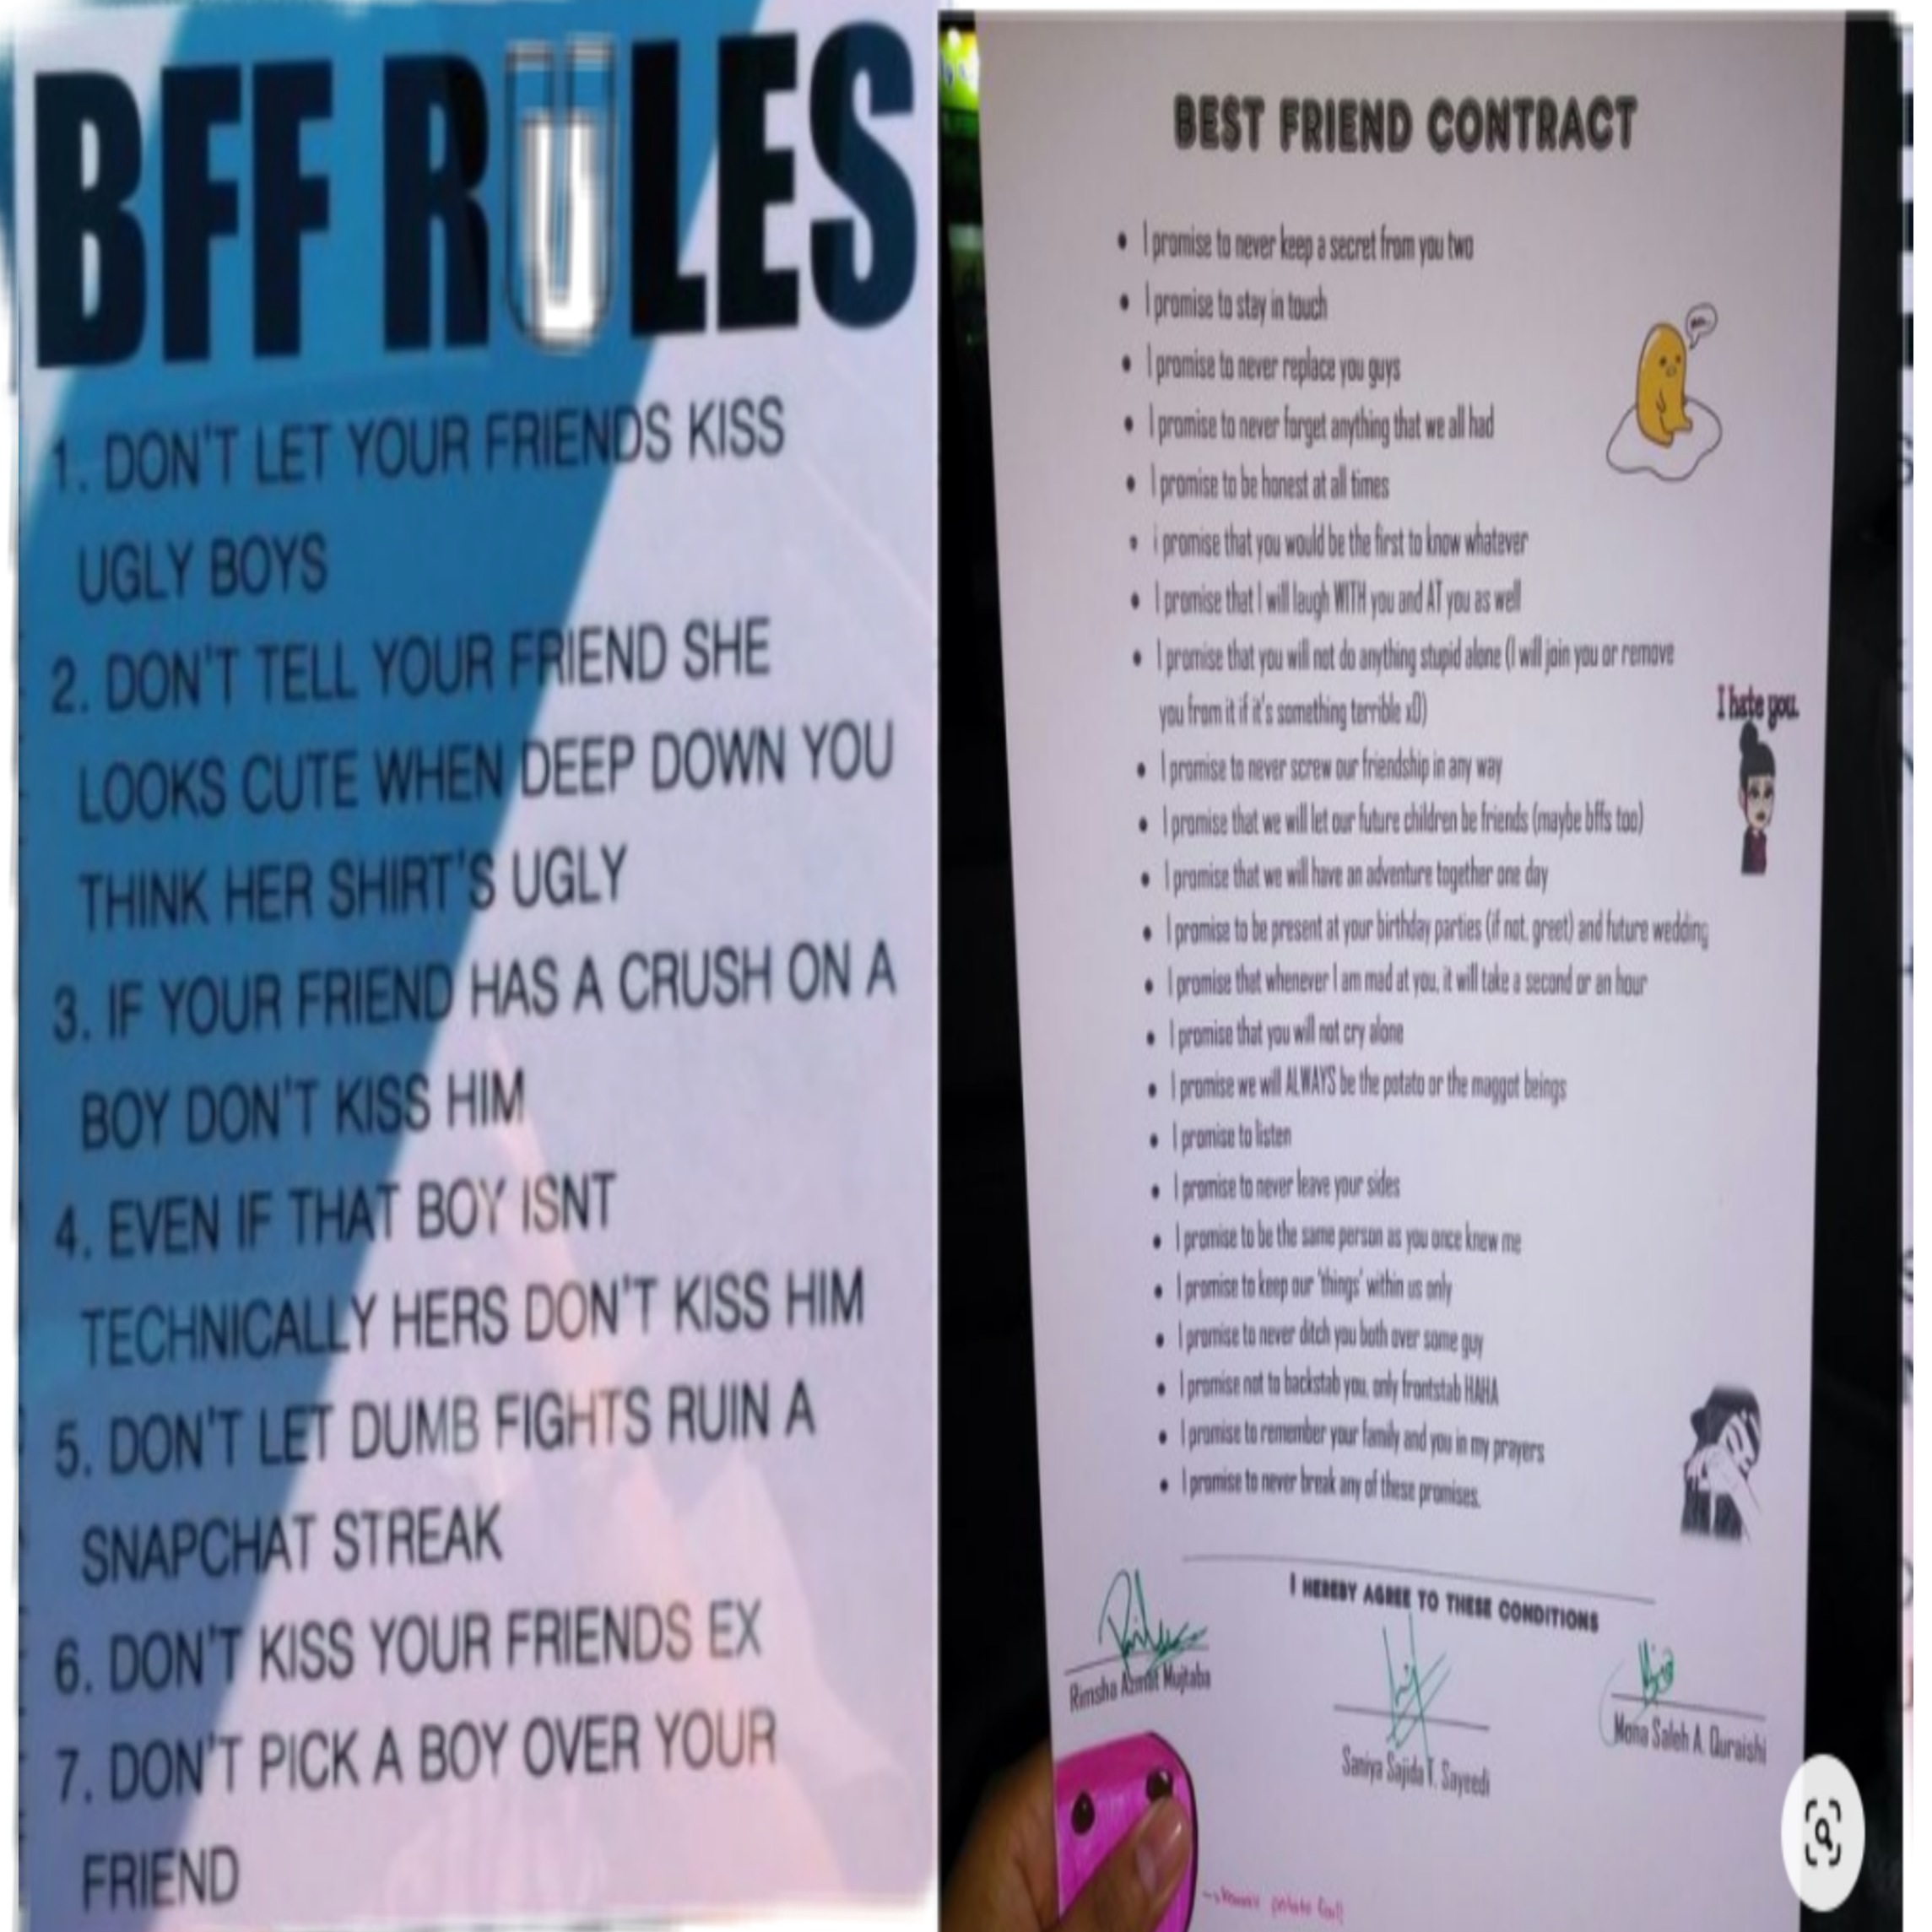 bff rules image by @siennahav_ilandmoir